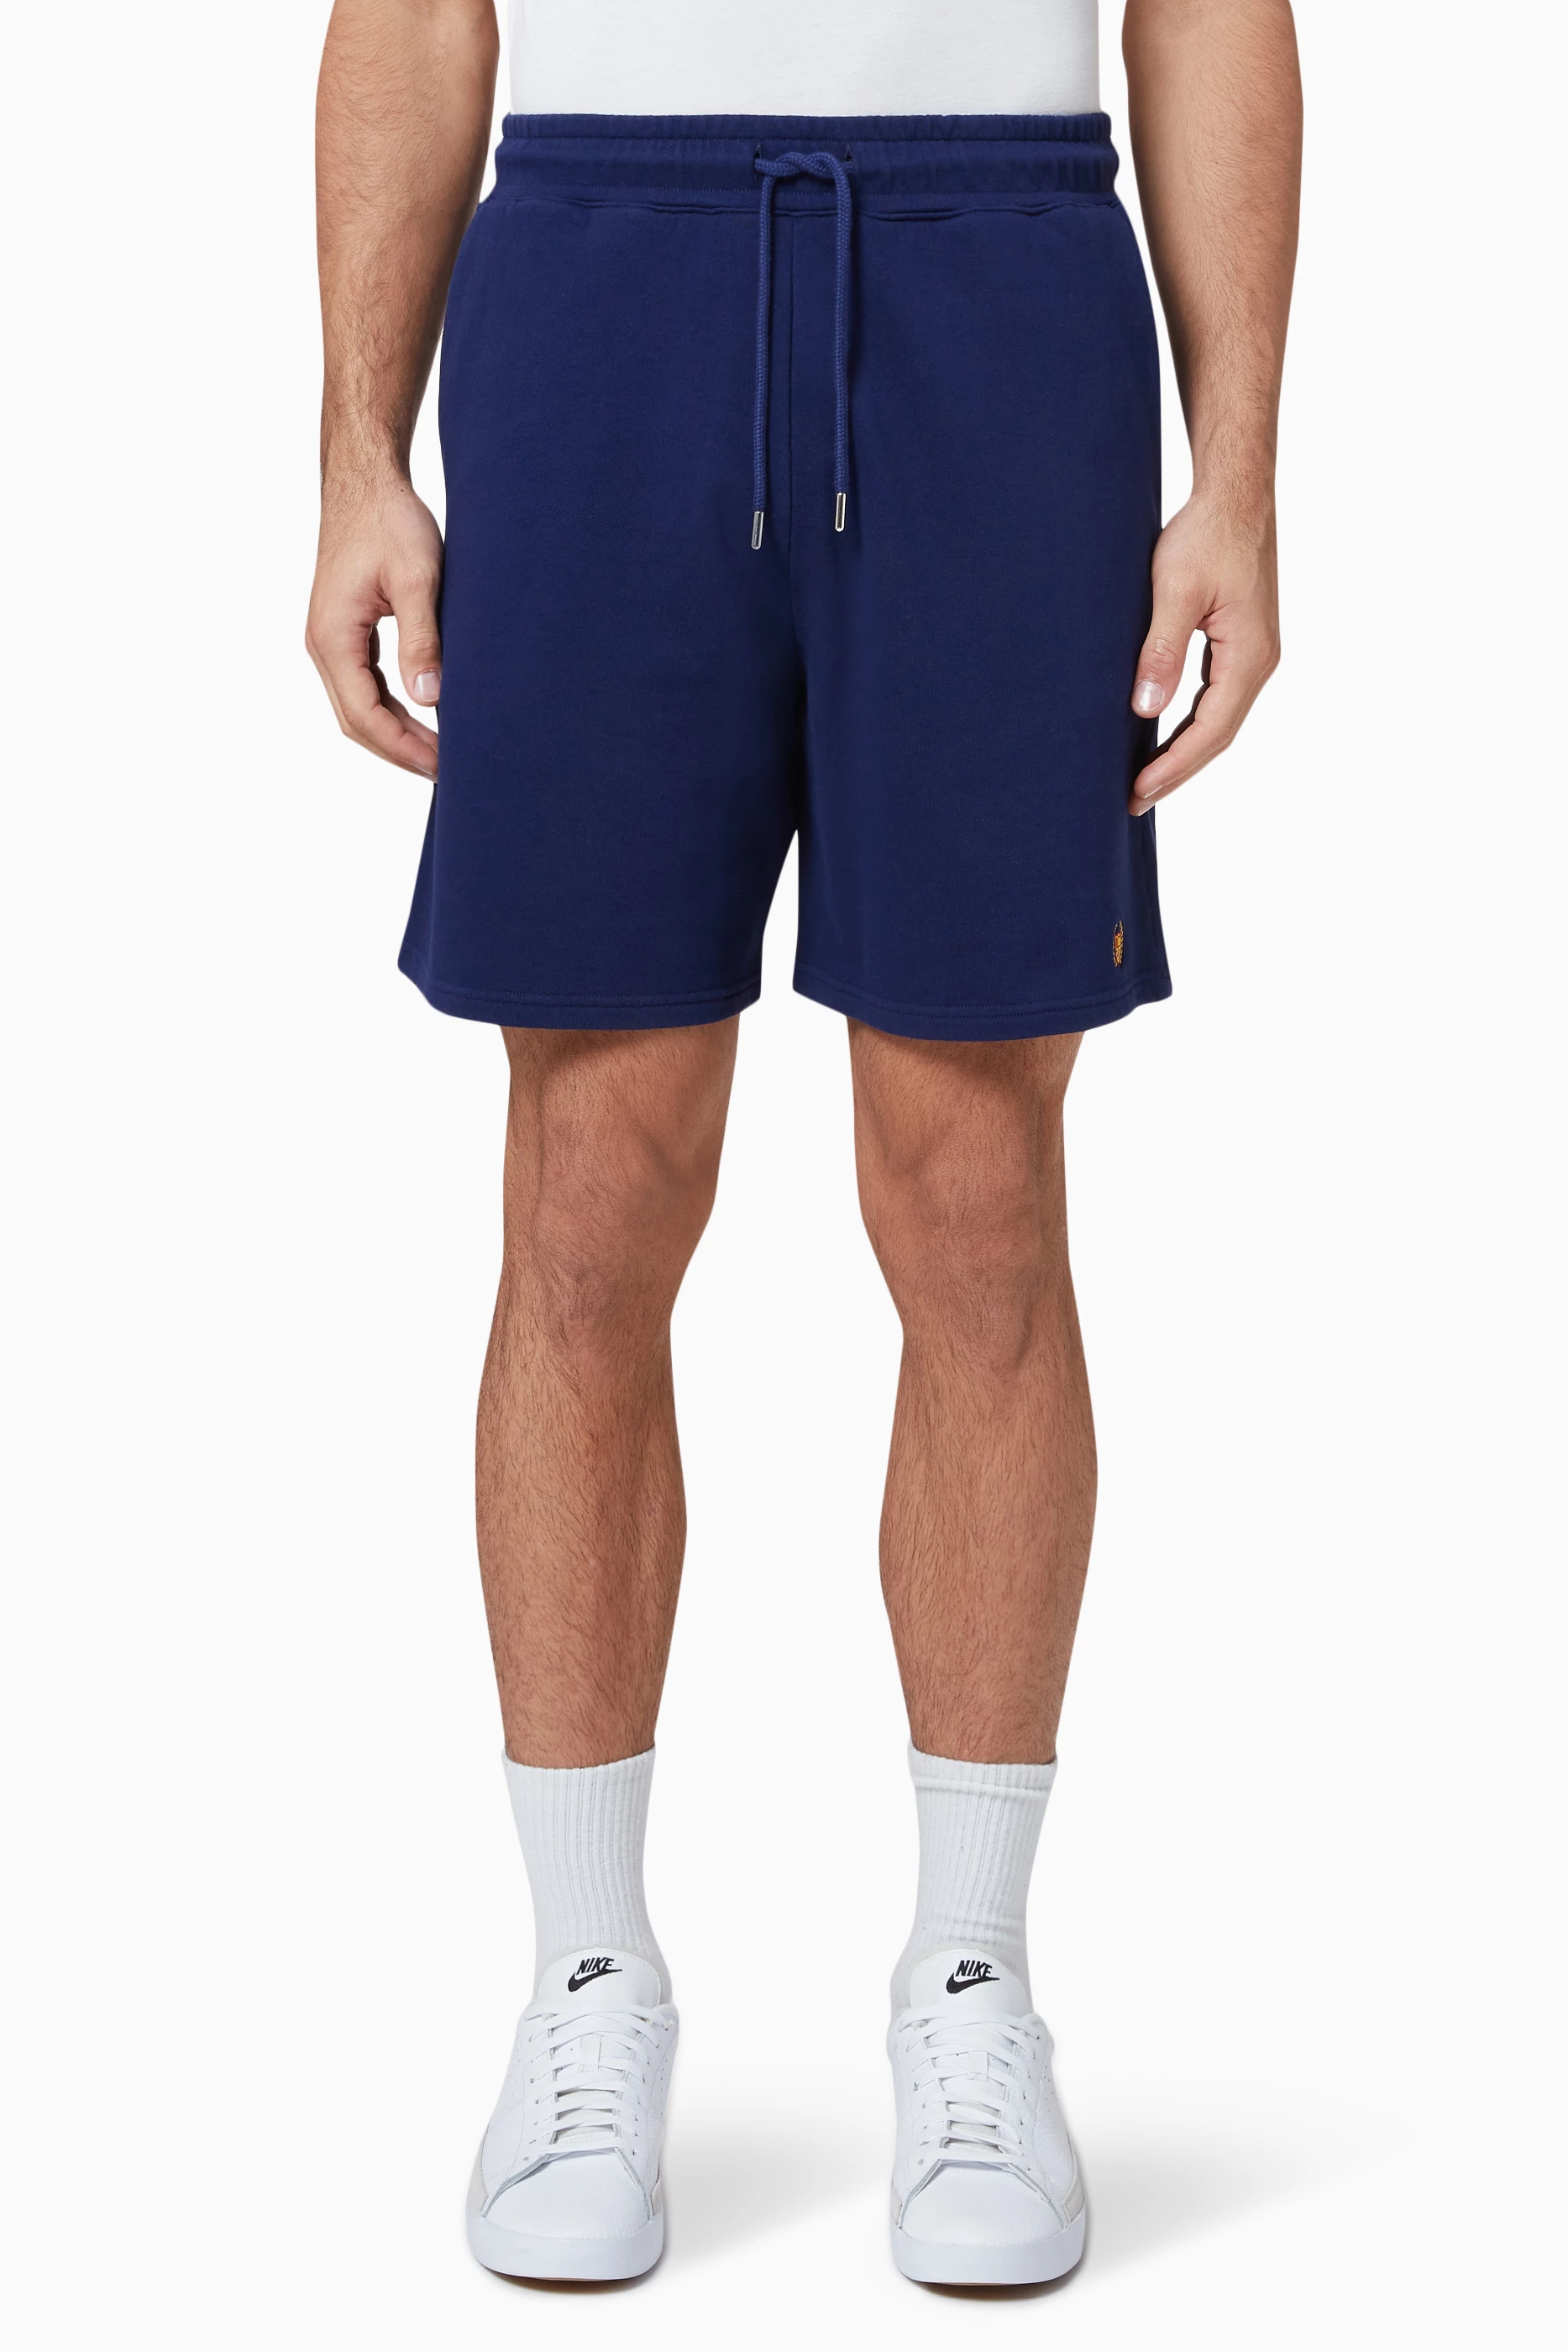 Herren Bekleidung Kurze Hosen Freizeitshorts BEL-AIR ATHLETICS Shorts Aus Baumwolle Mit Academy Crest-logo in Blau für Herren 